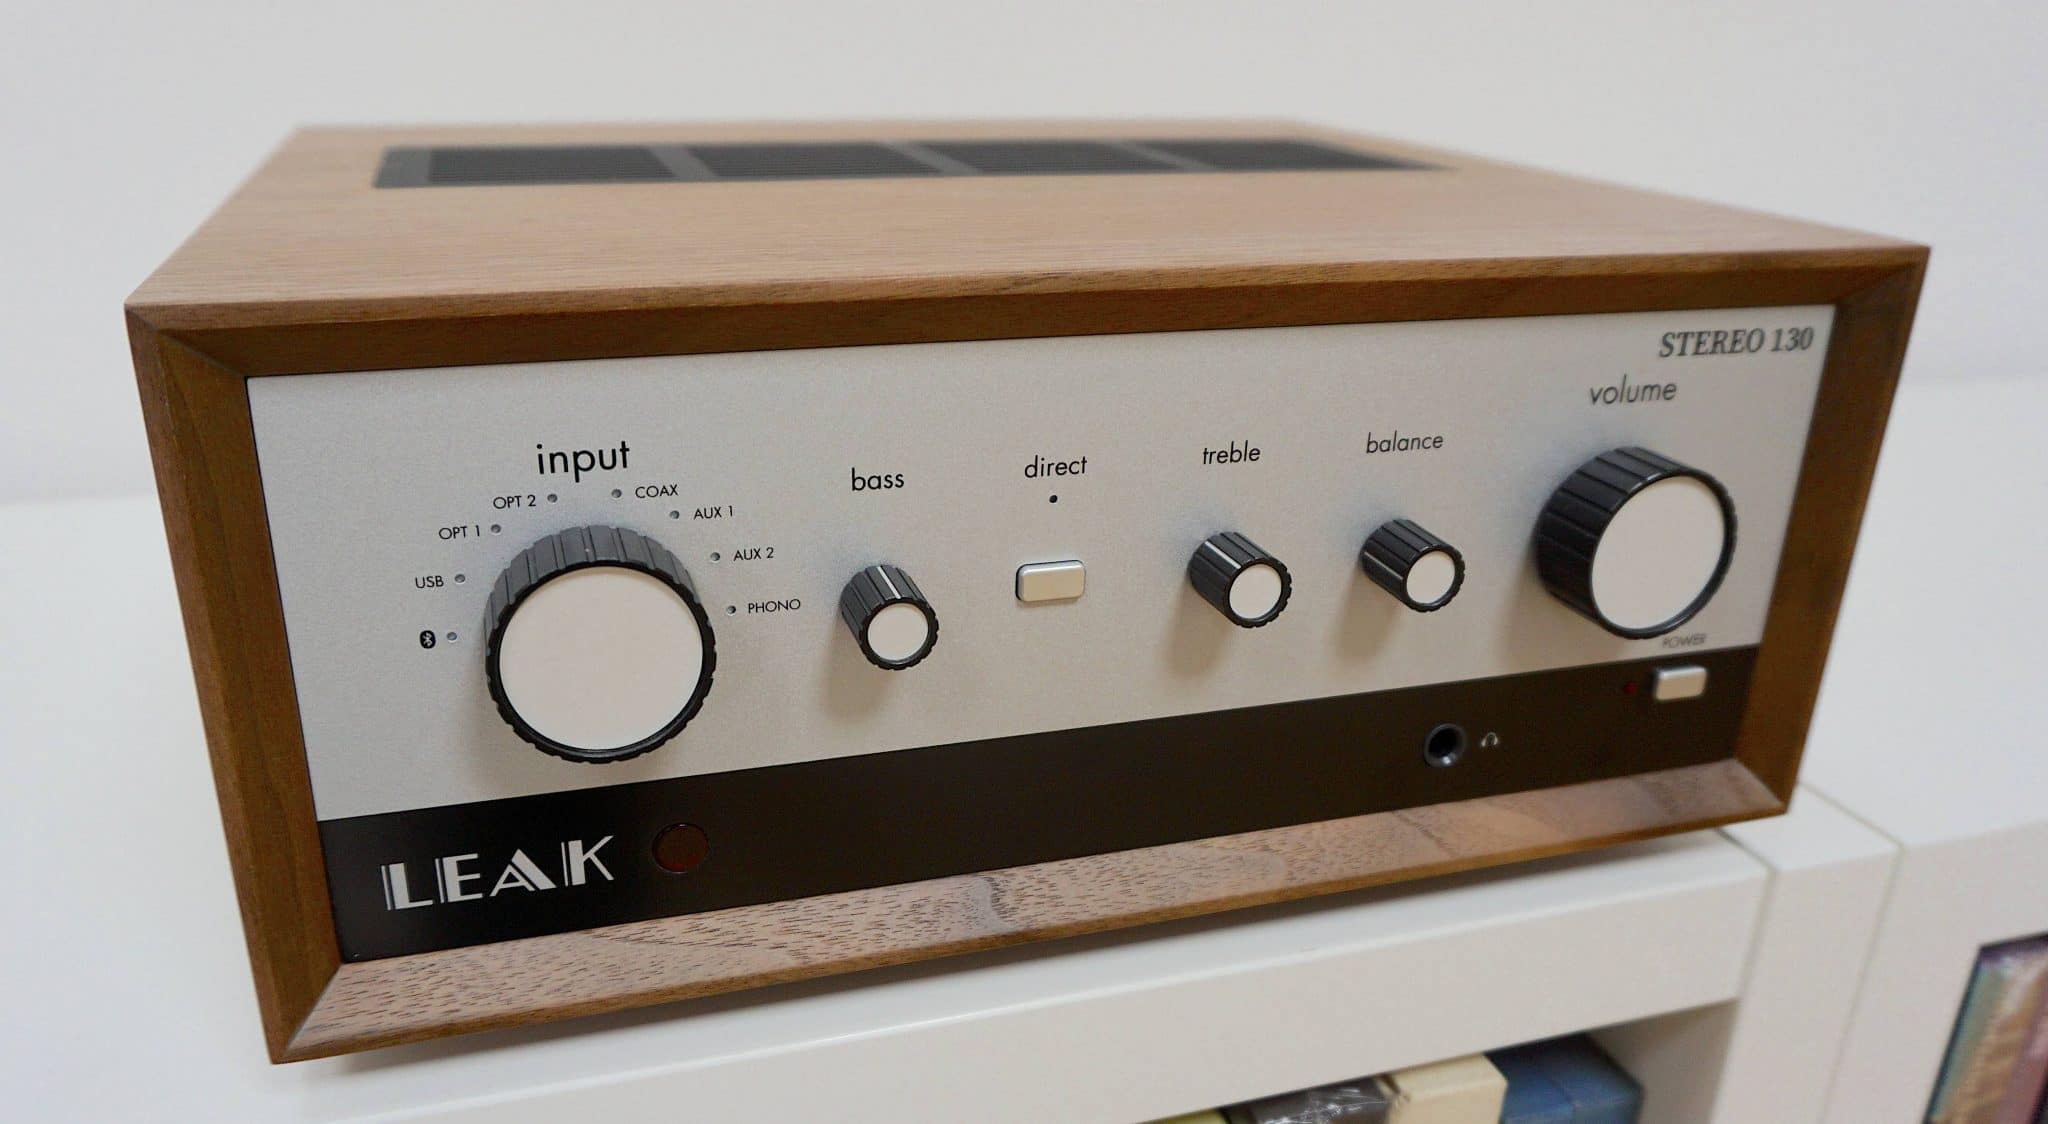 Stereo 130 Amplifier From Leak